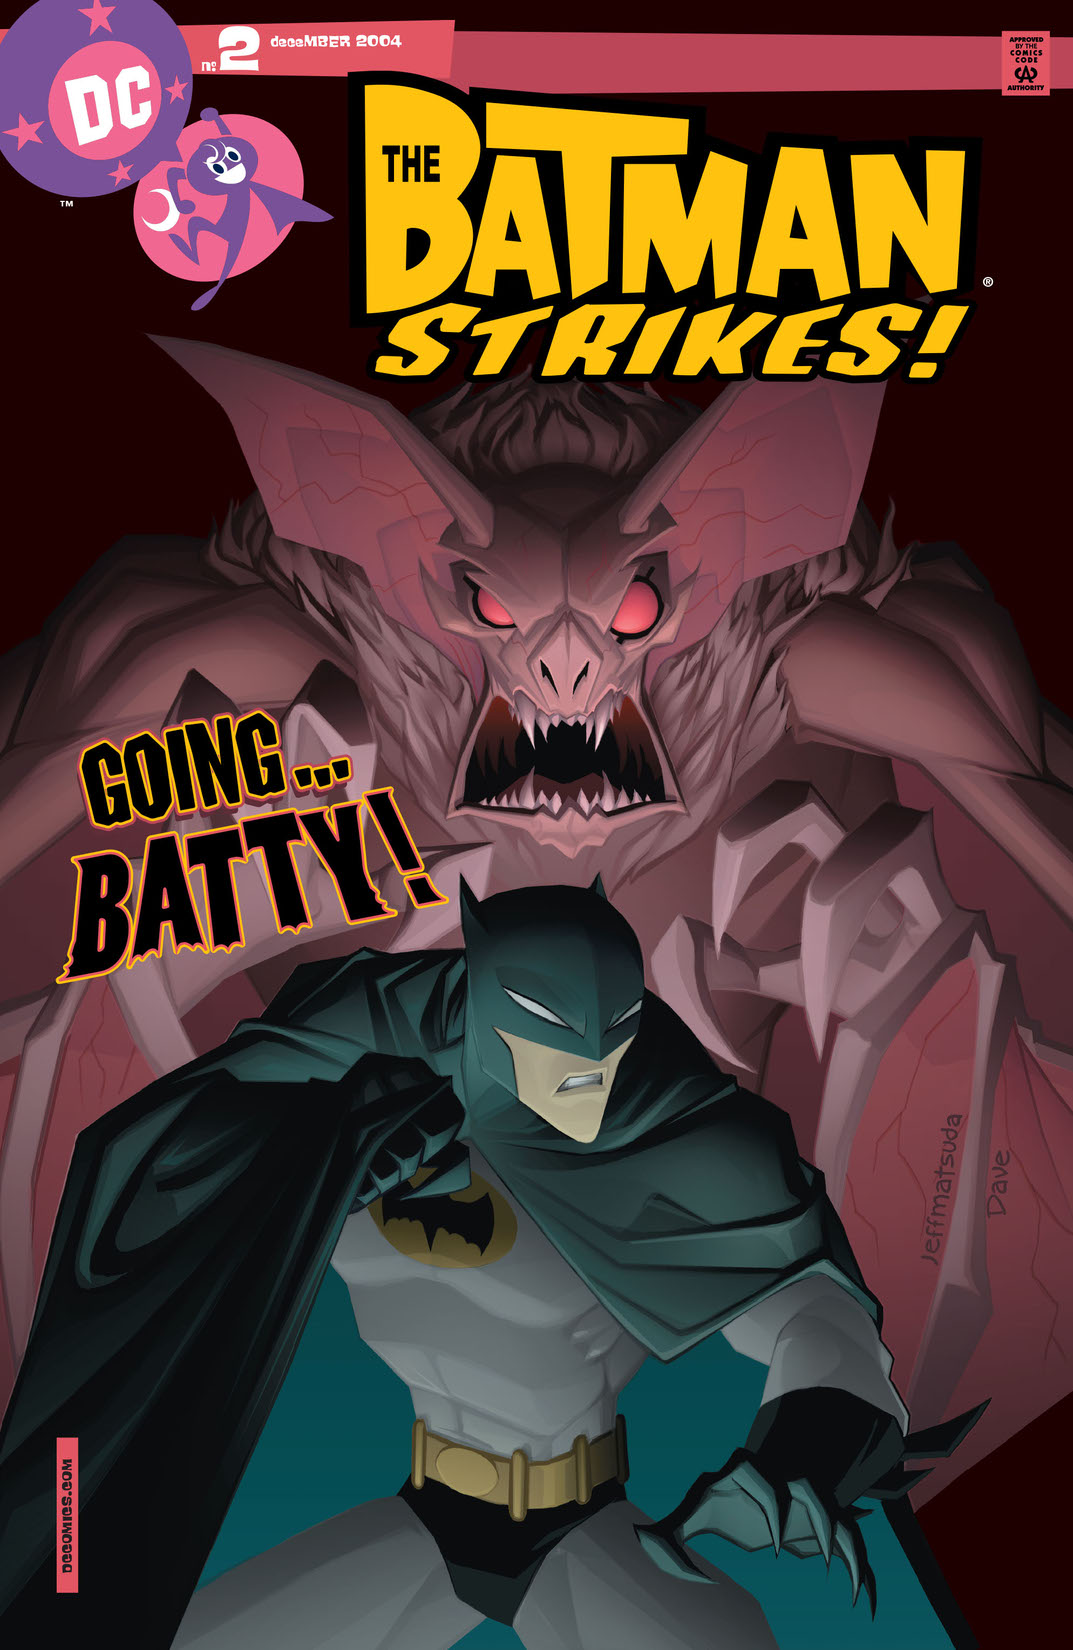 Batman Strikes! #2 preview images